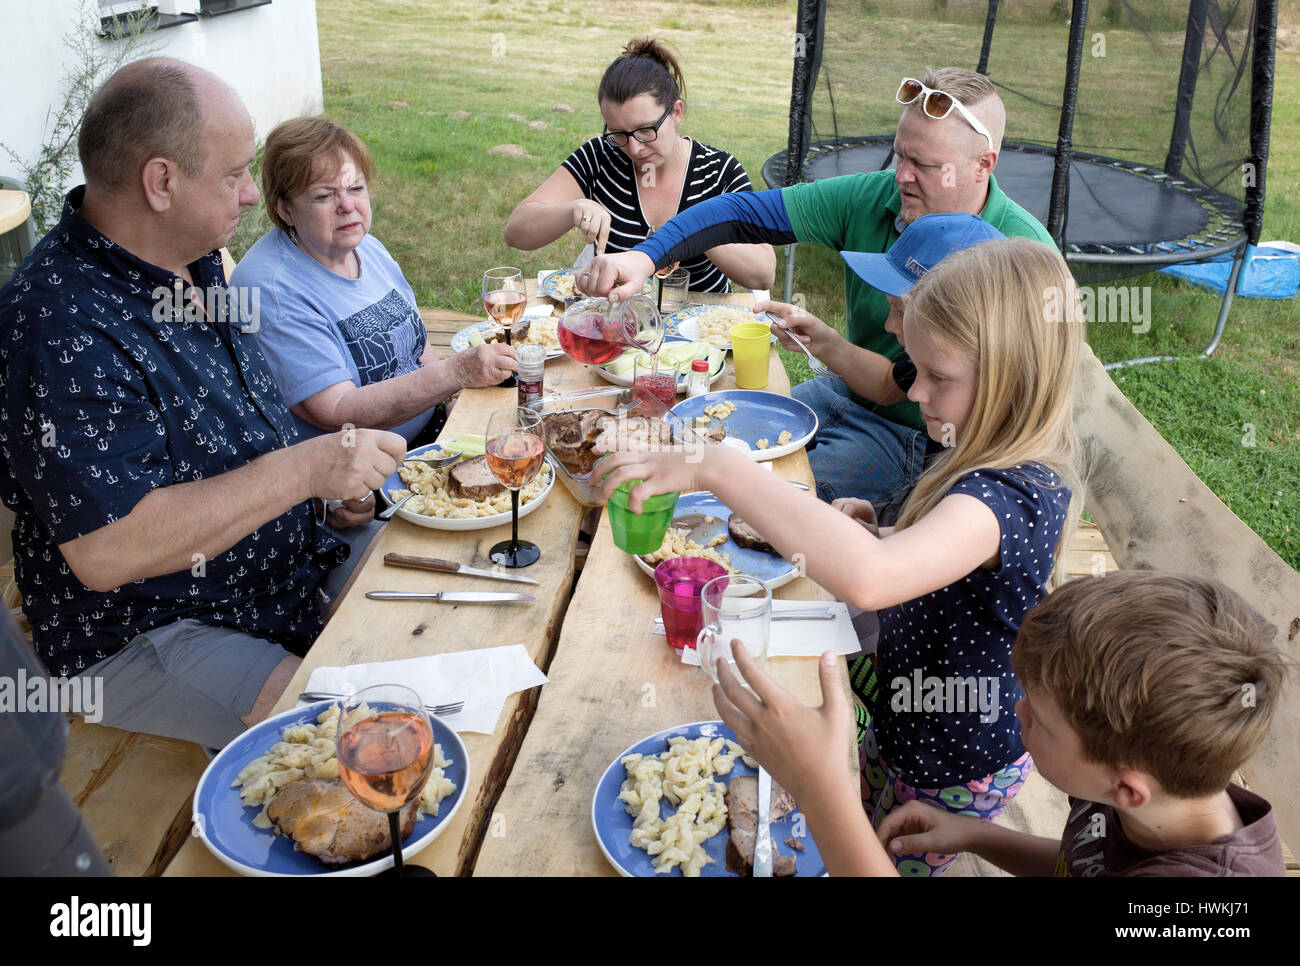 Cena in famiglia con pasta di patate e pollo. Il Nonno polacco 57, nonna 70 genitori 38, 41 bambini di 12, 8, 10. Zawady Polonia centrale Europa Foto Stock